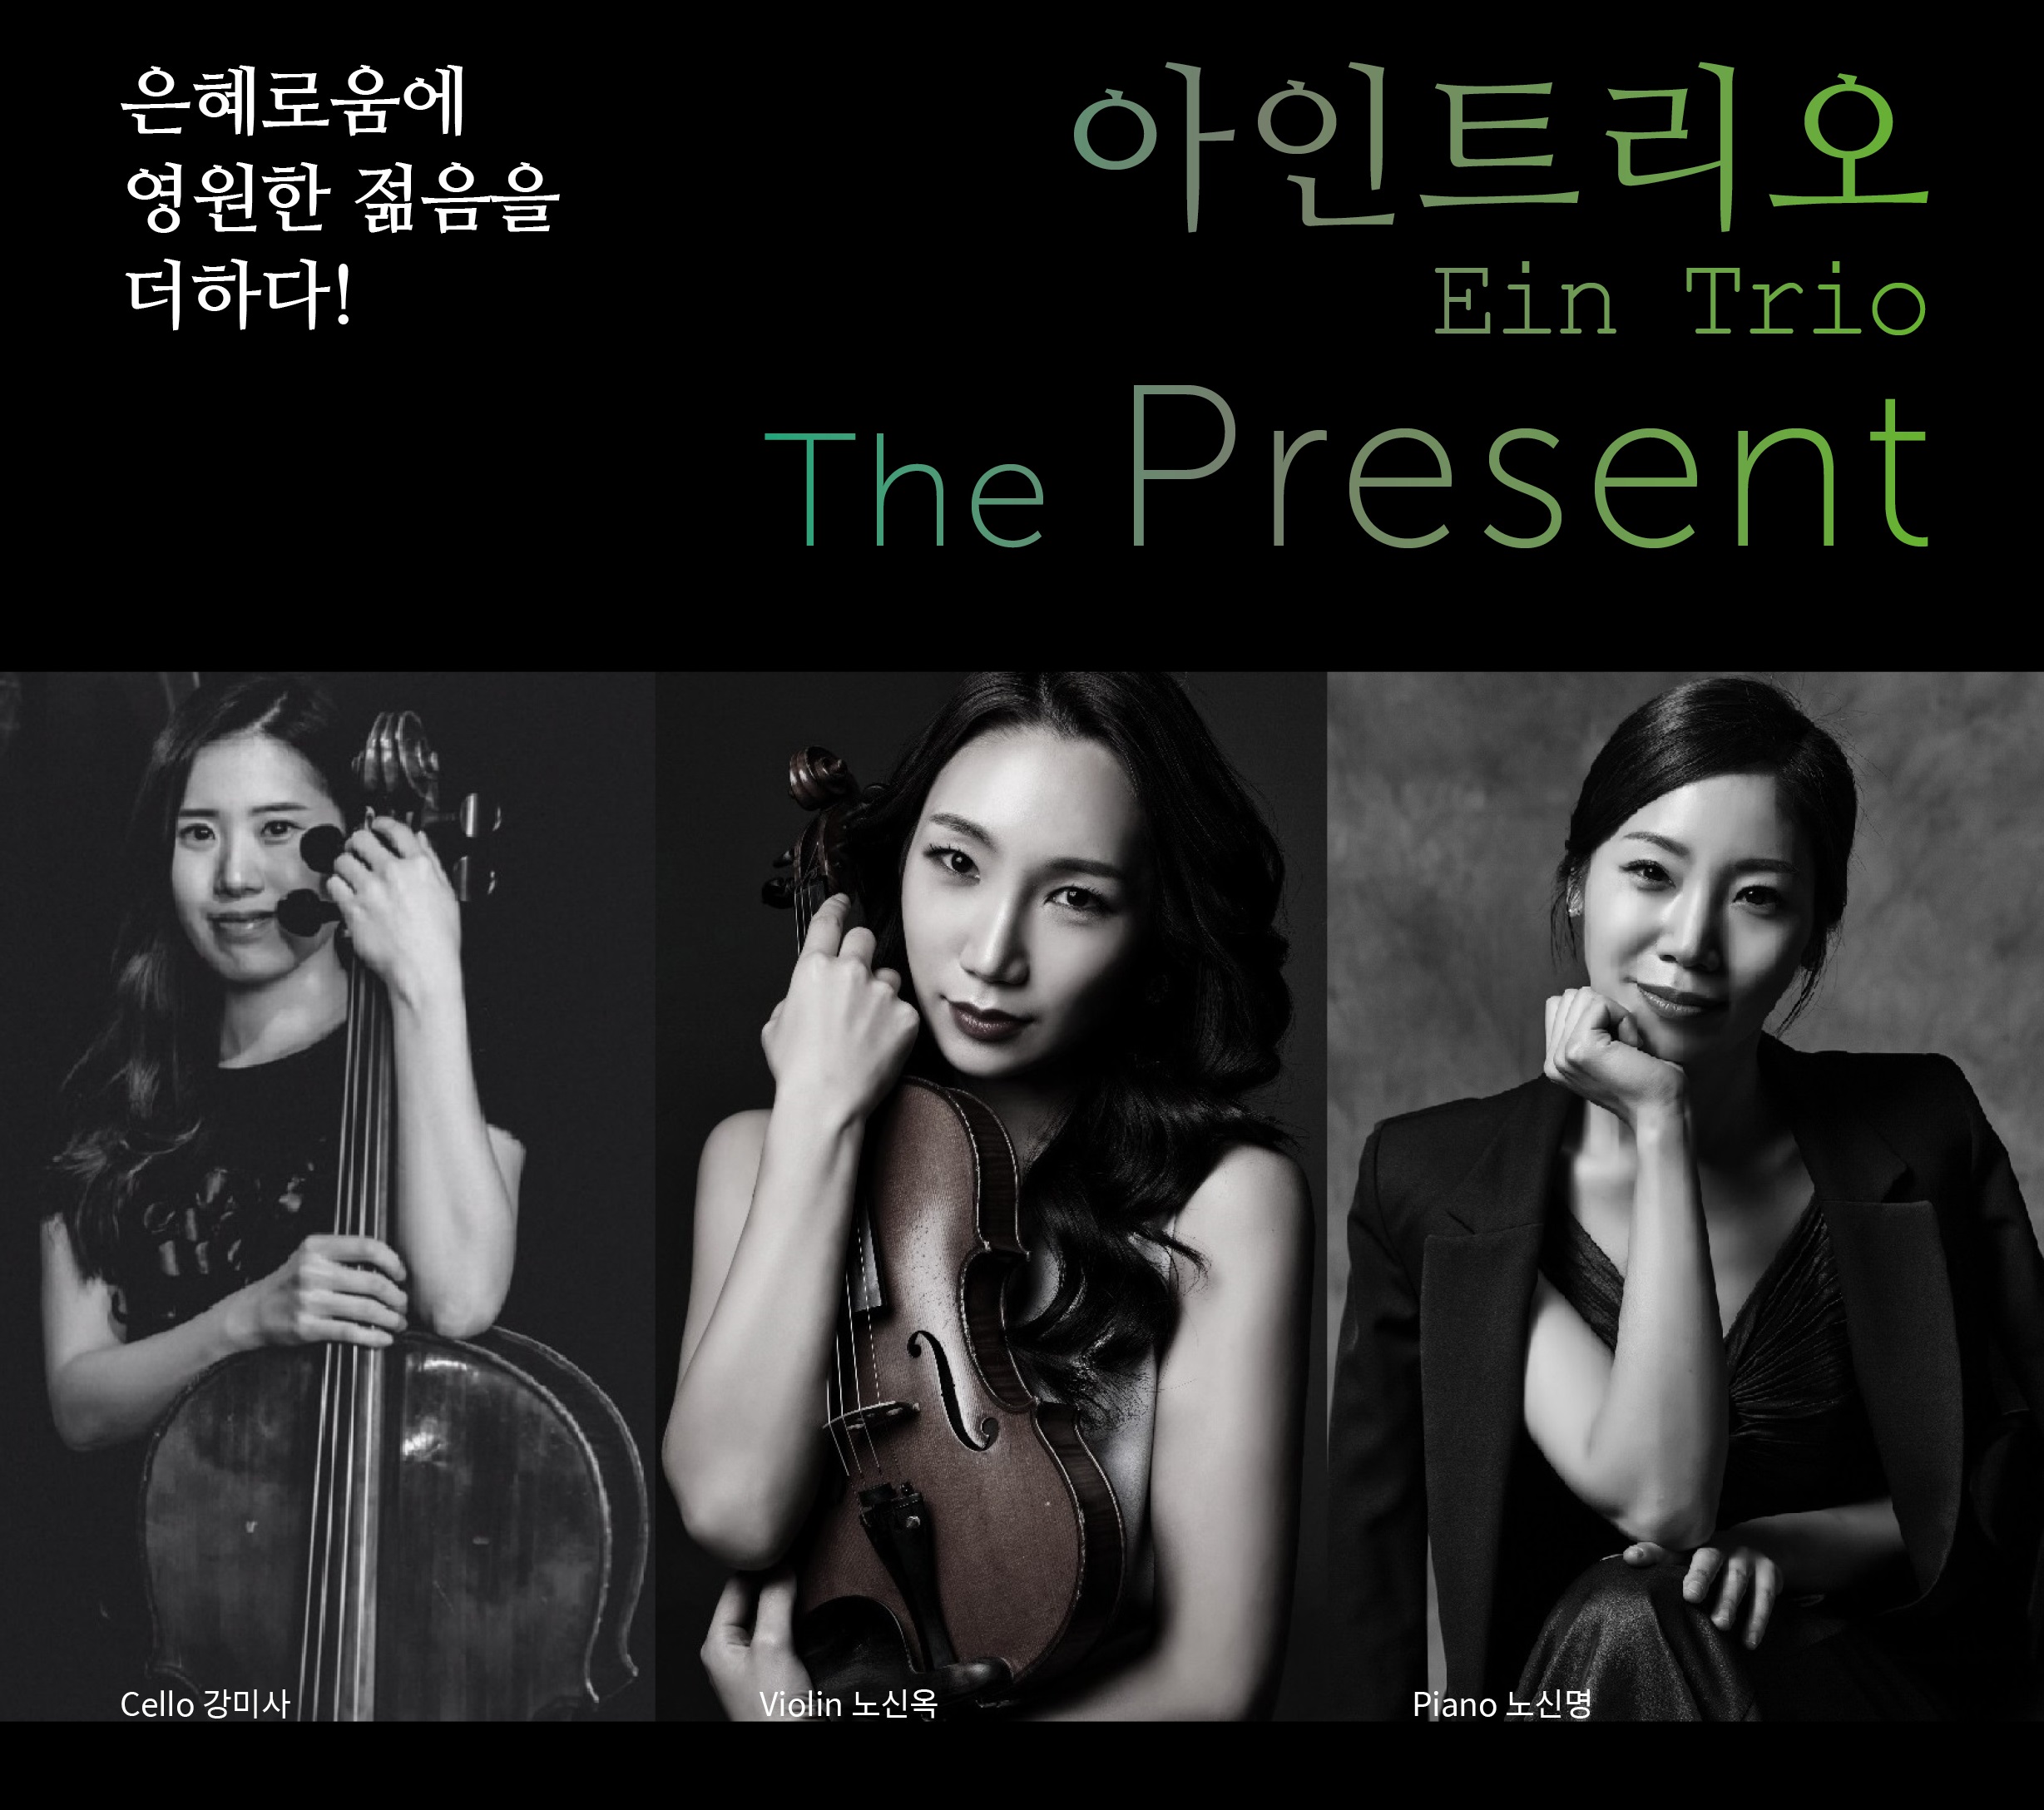 아인트리오 Ein Trio - The Present (악보)